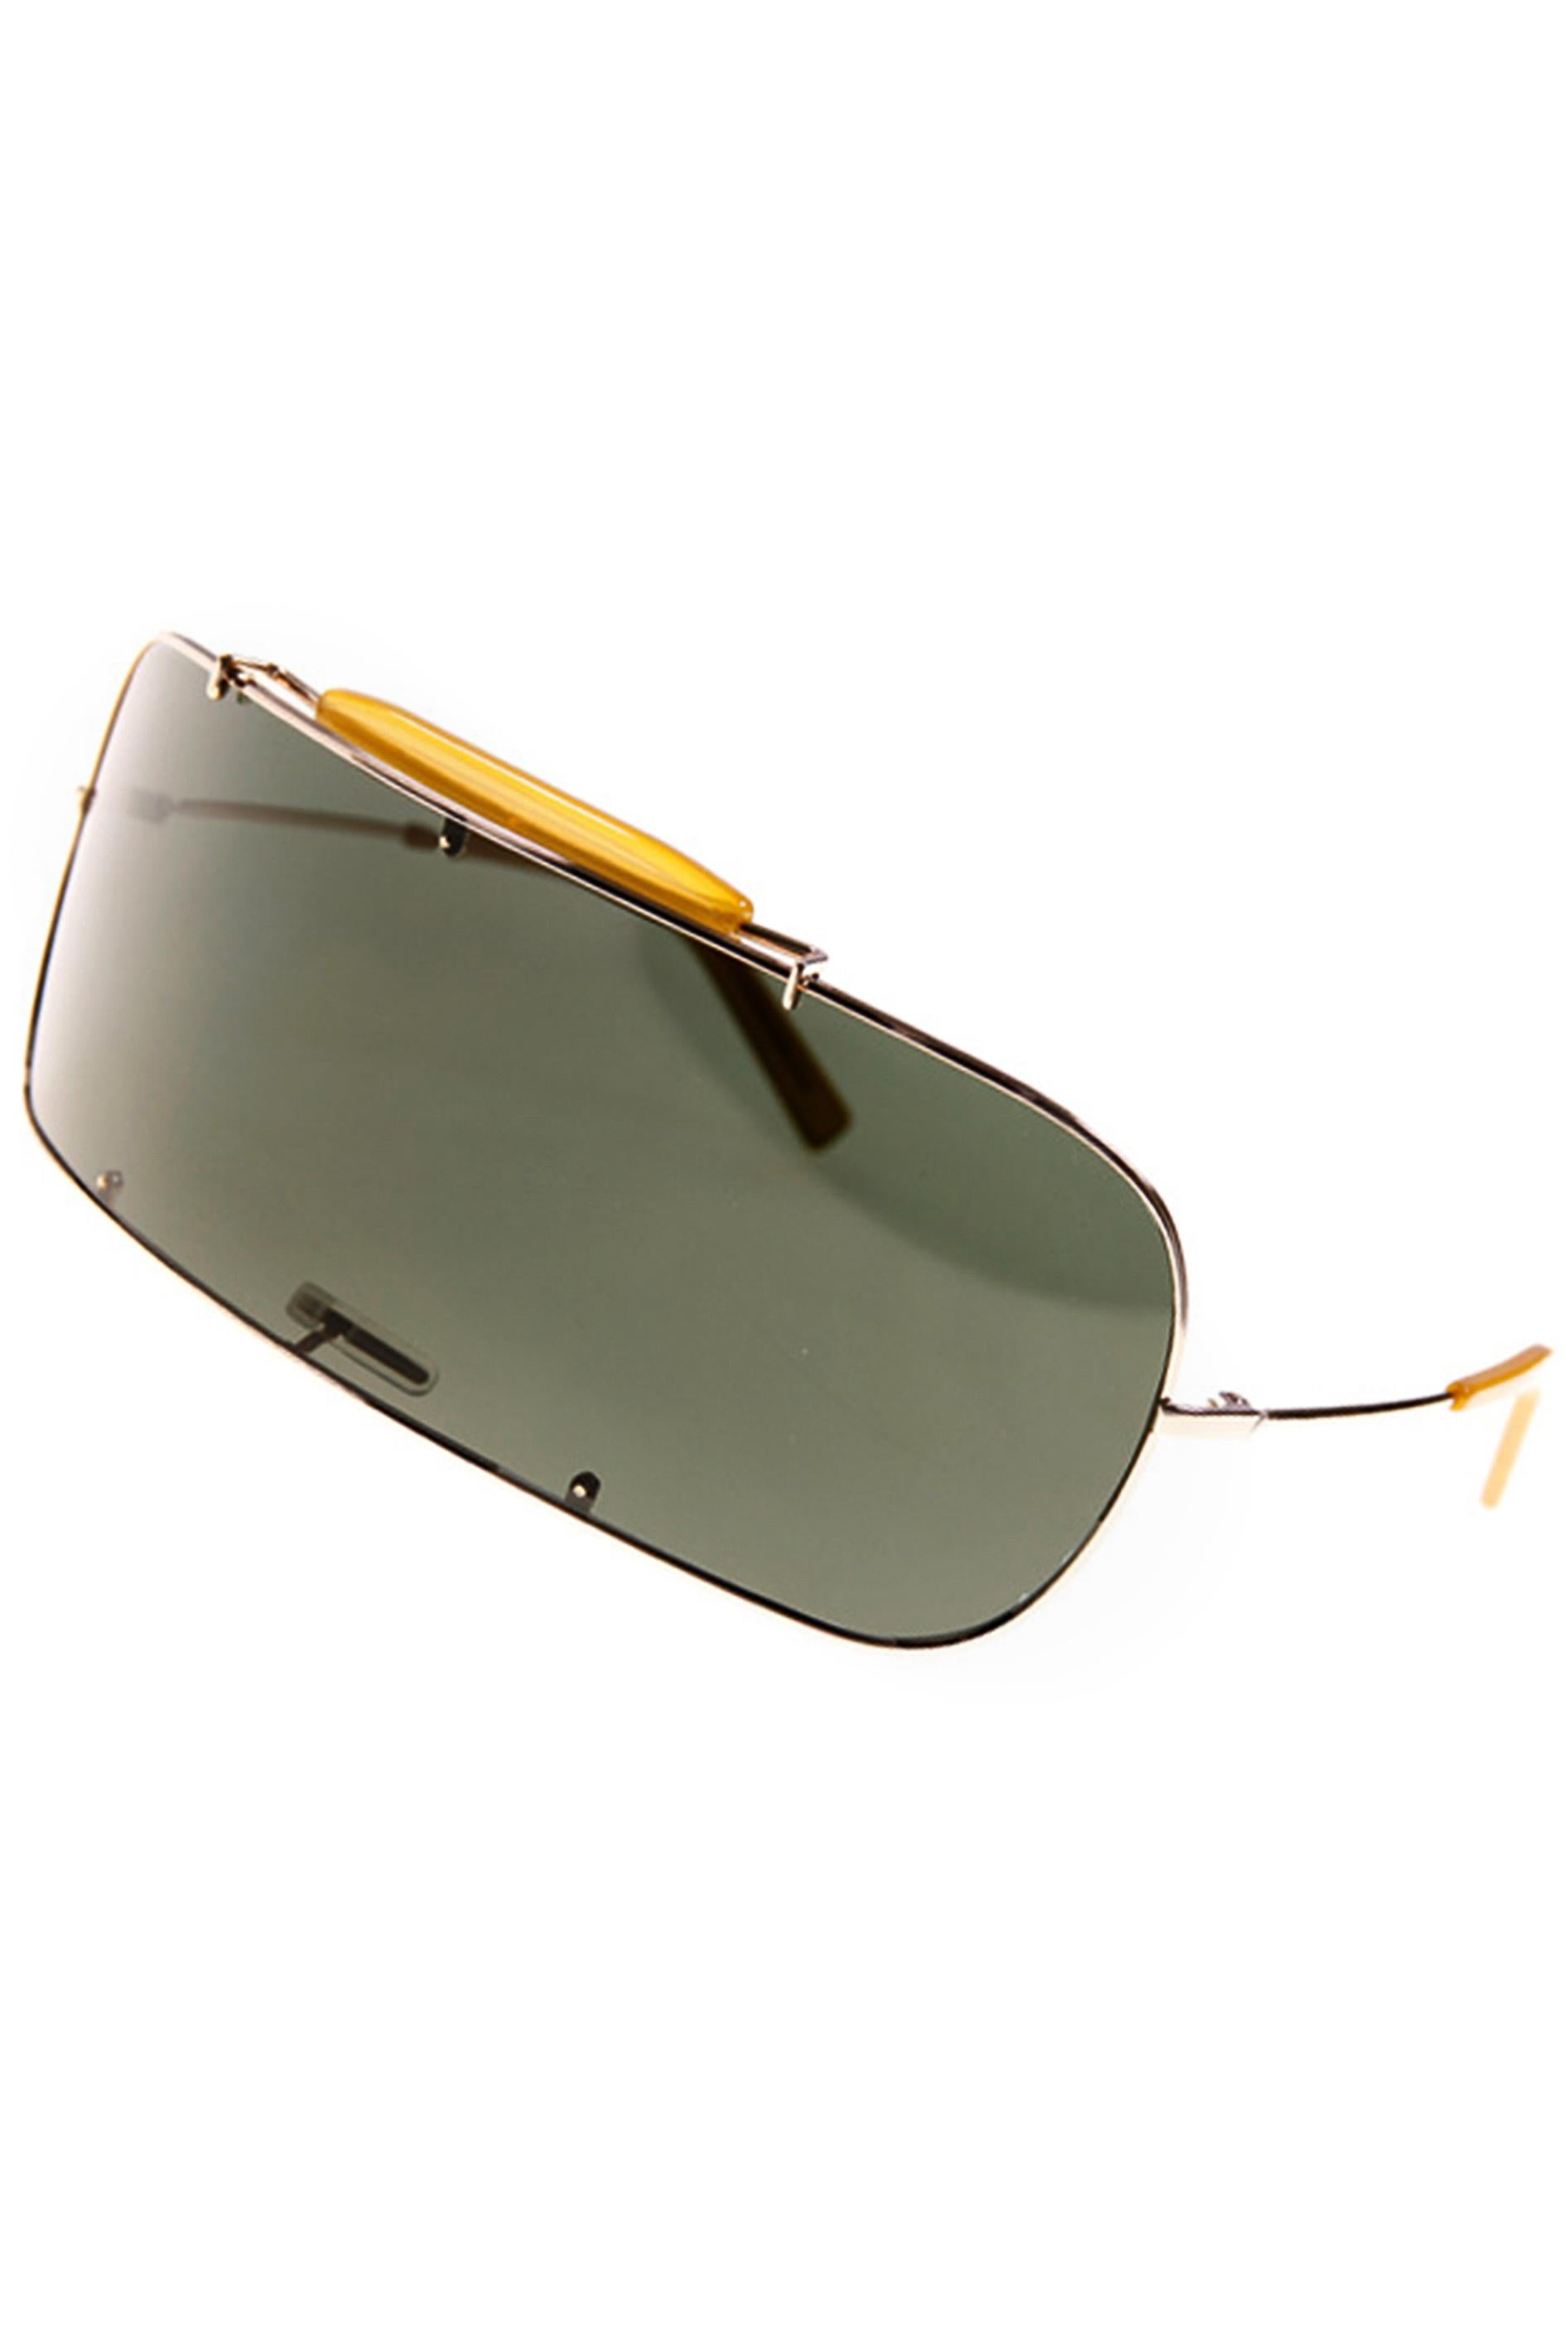 Maison Martin Margiela L'Incognito Aviator Shield Sunglasses SS 2009 In Excellent Condition For Sale In Los Angeles, CA